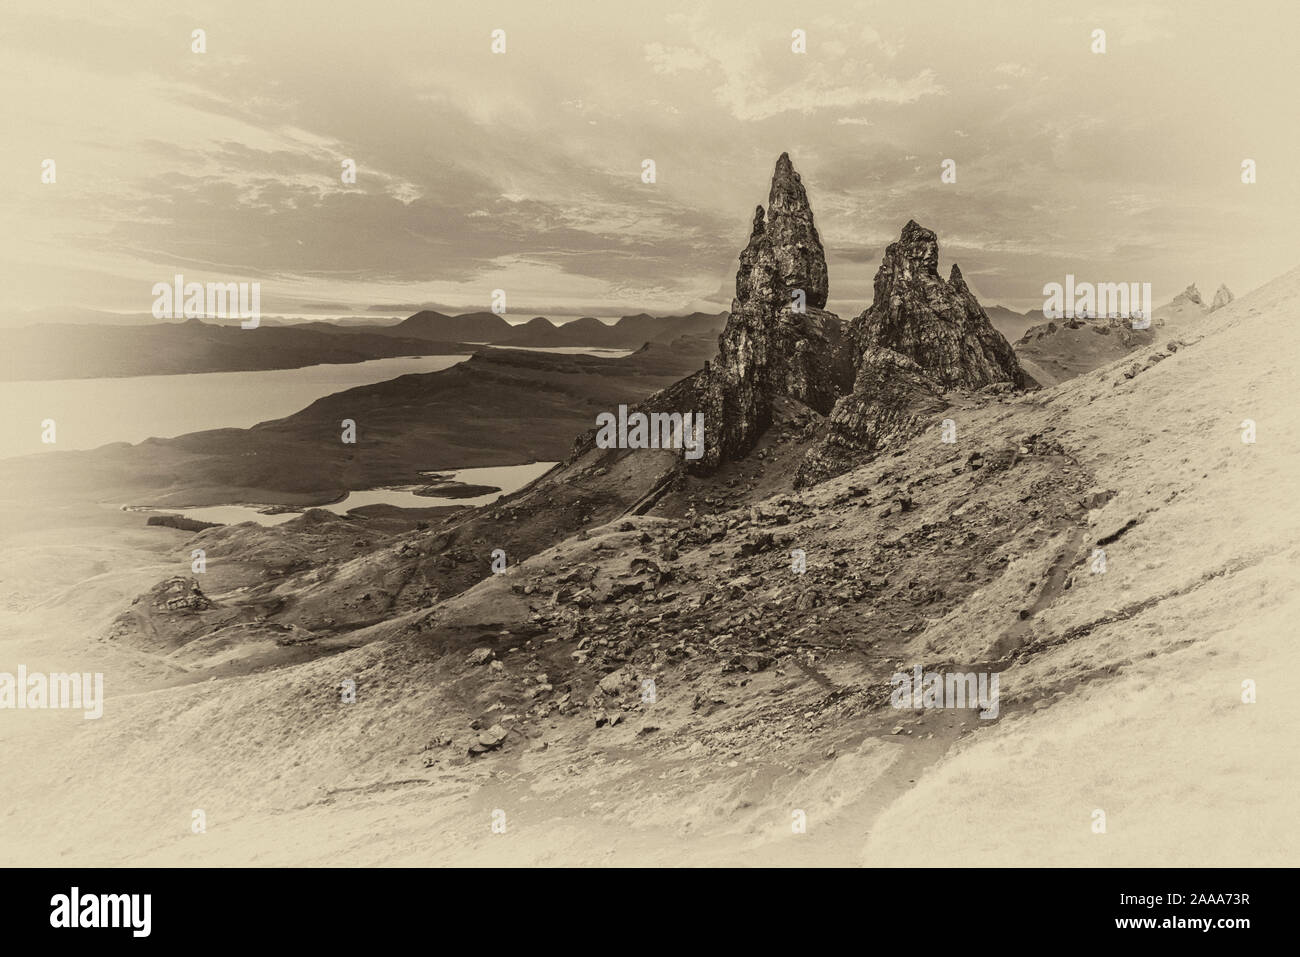 Le vieil homme de Storr rock pinnacles tour [en] monochrome sur l'île de Skye dans les îles occidentales de l'Écosse Banque D'Images